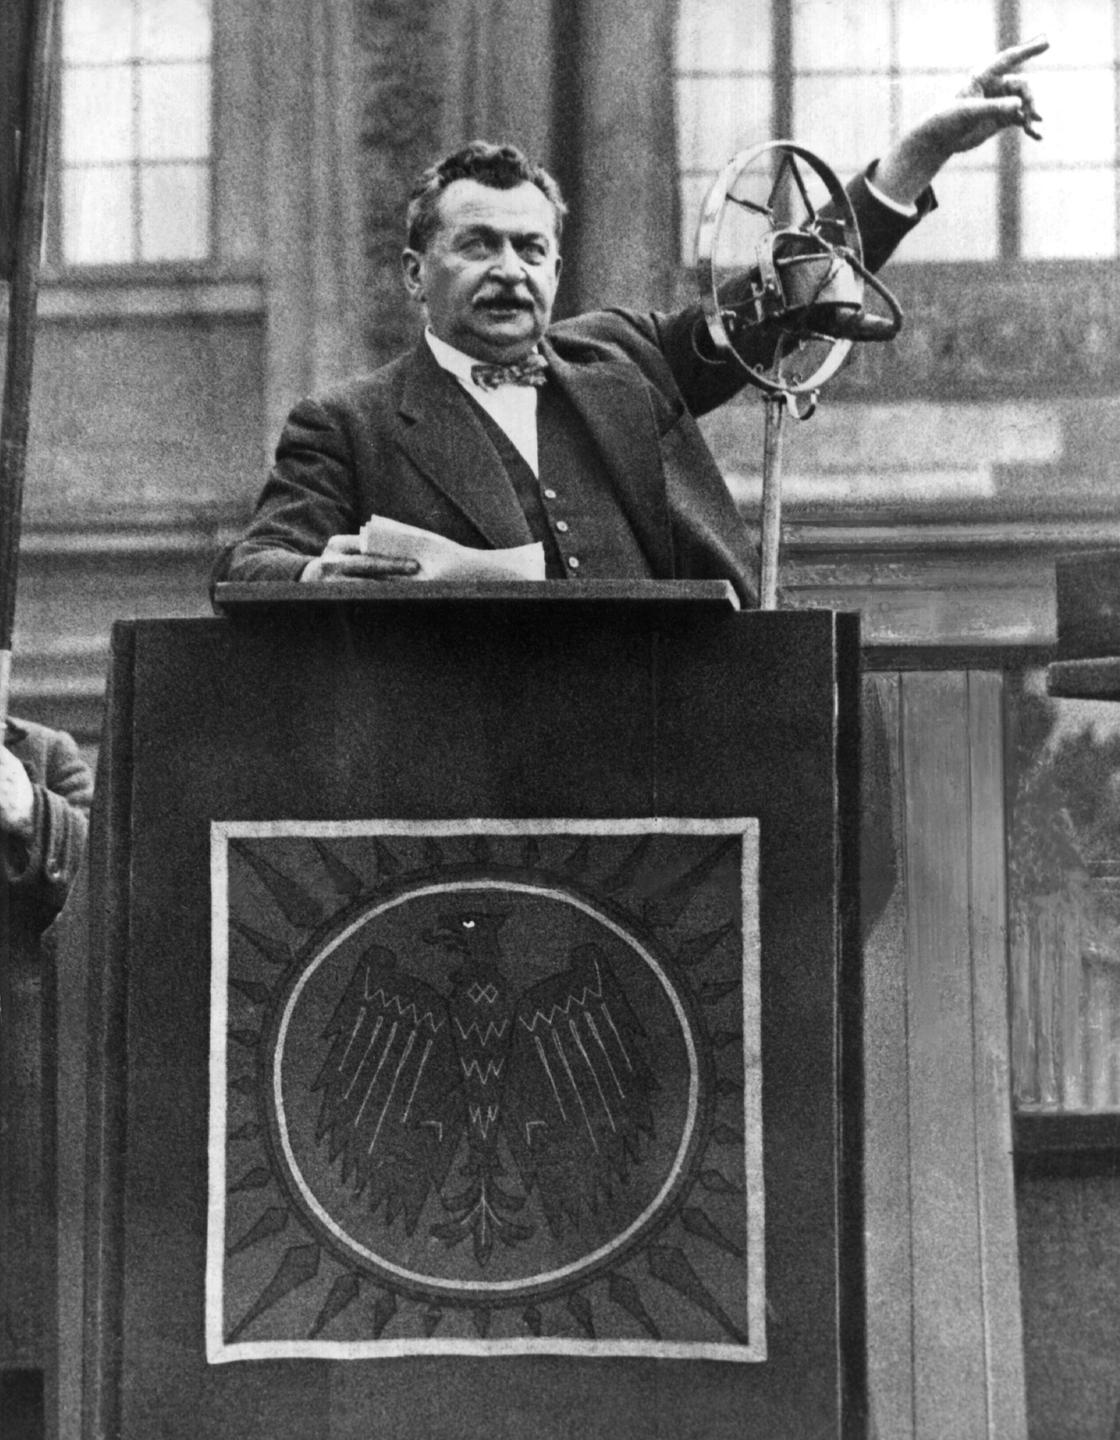 Der SPD-Politiker Otto Wels (undatierte Aufnahme) gab am 23. März 1933 die Erklärung der Fraktion der Sozialdemokratischen Partei gegen das Ermächtigungsgesetz Hitlers ab.